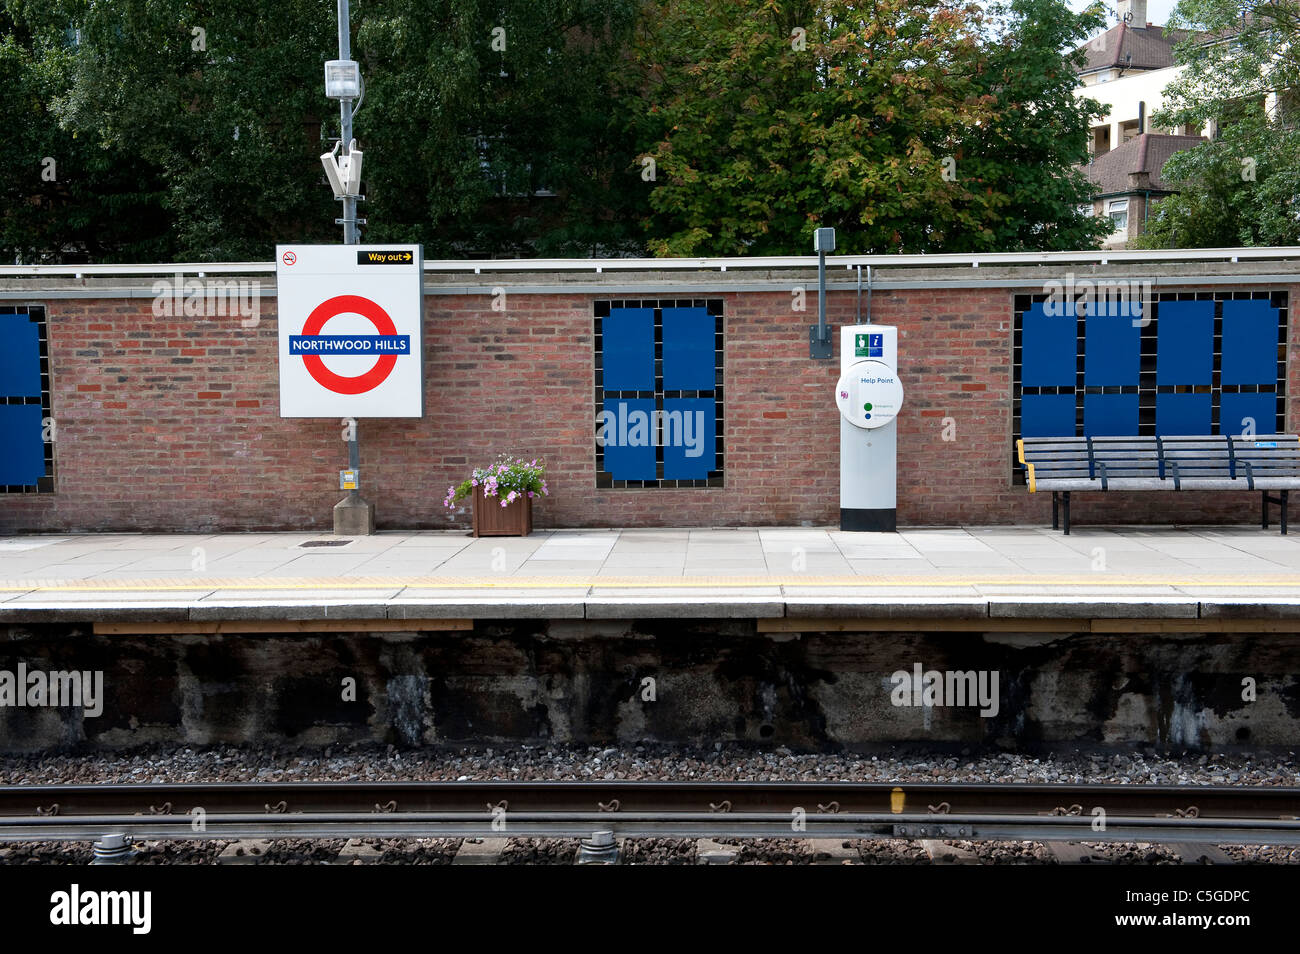 Stazione di vuoto la piattaforma a Northwood Hills stazione della metropolitana di Londra, Inghilterra. Foto Stock